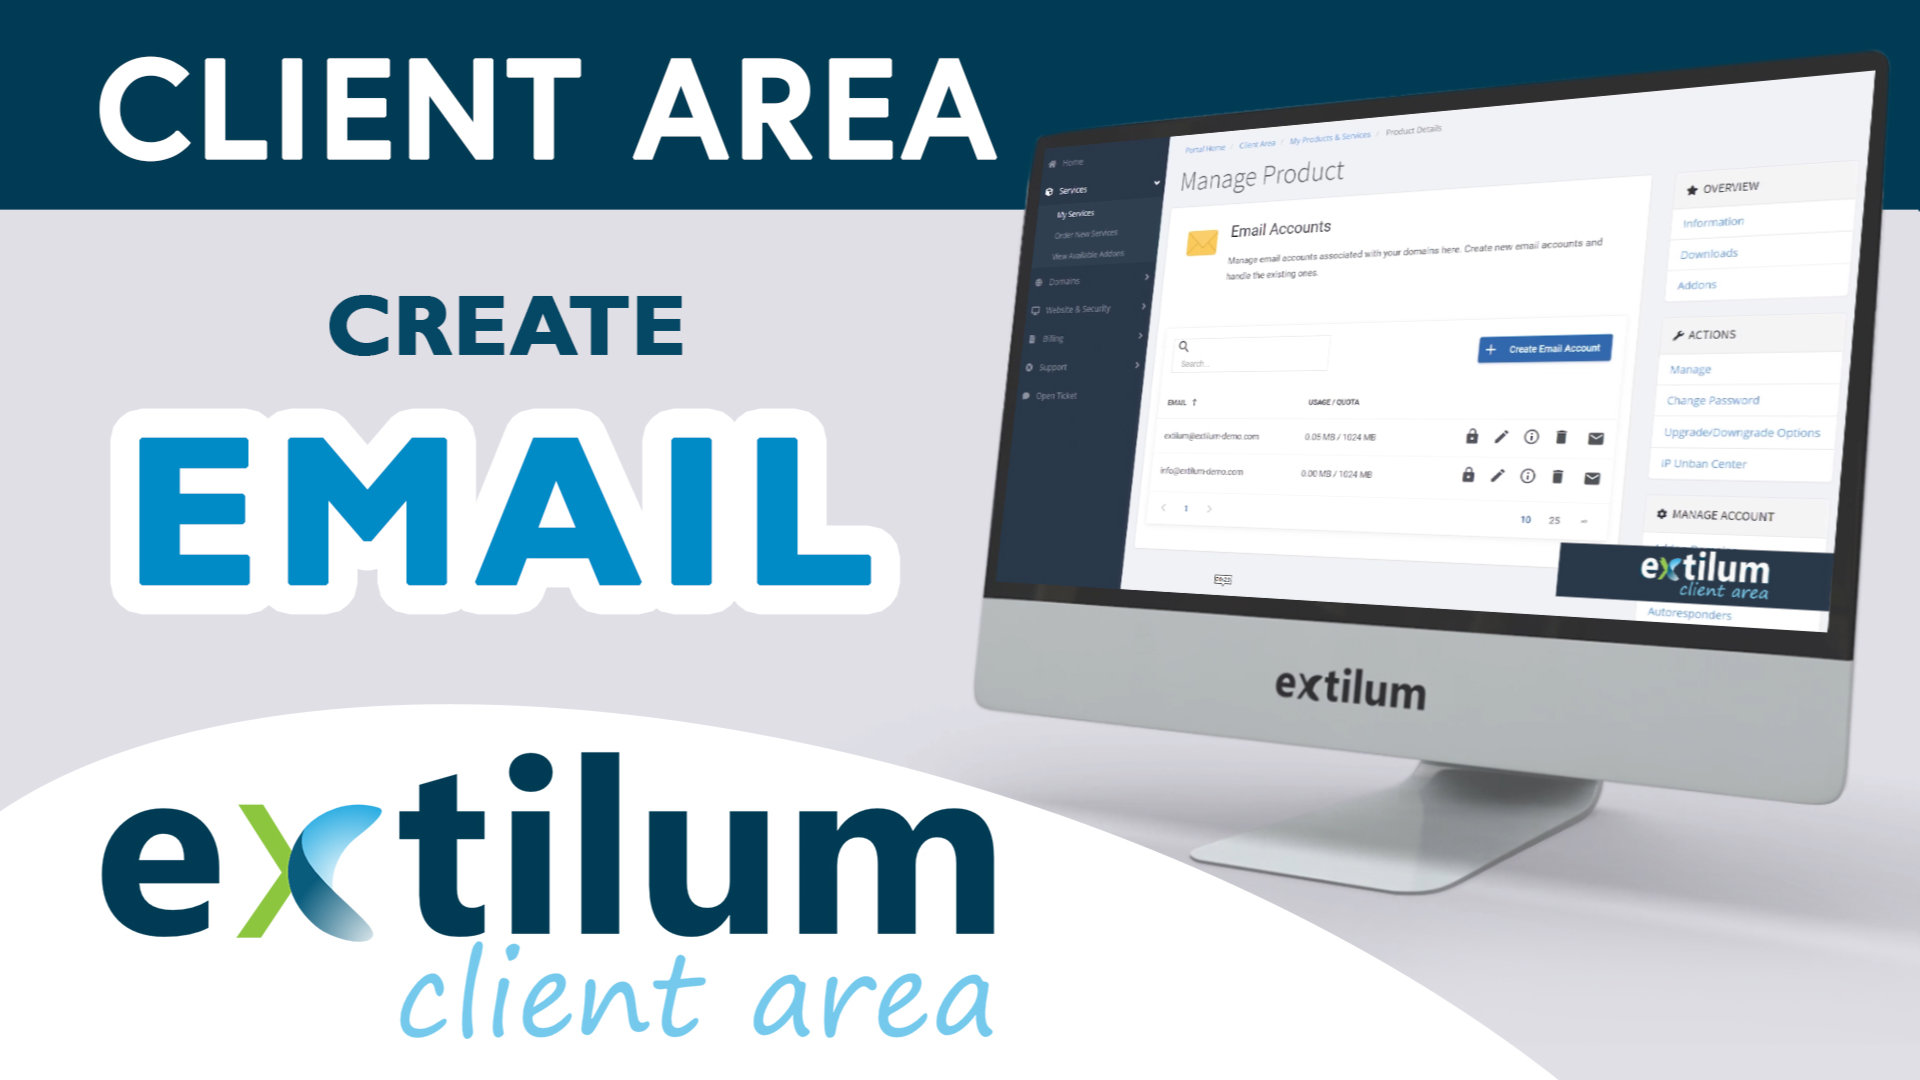 Extilum Client Area Create Email